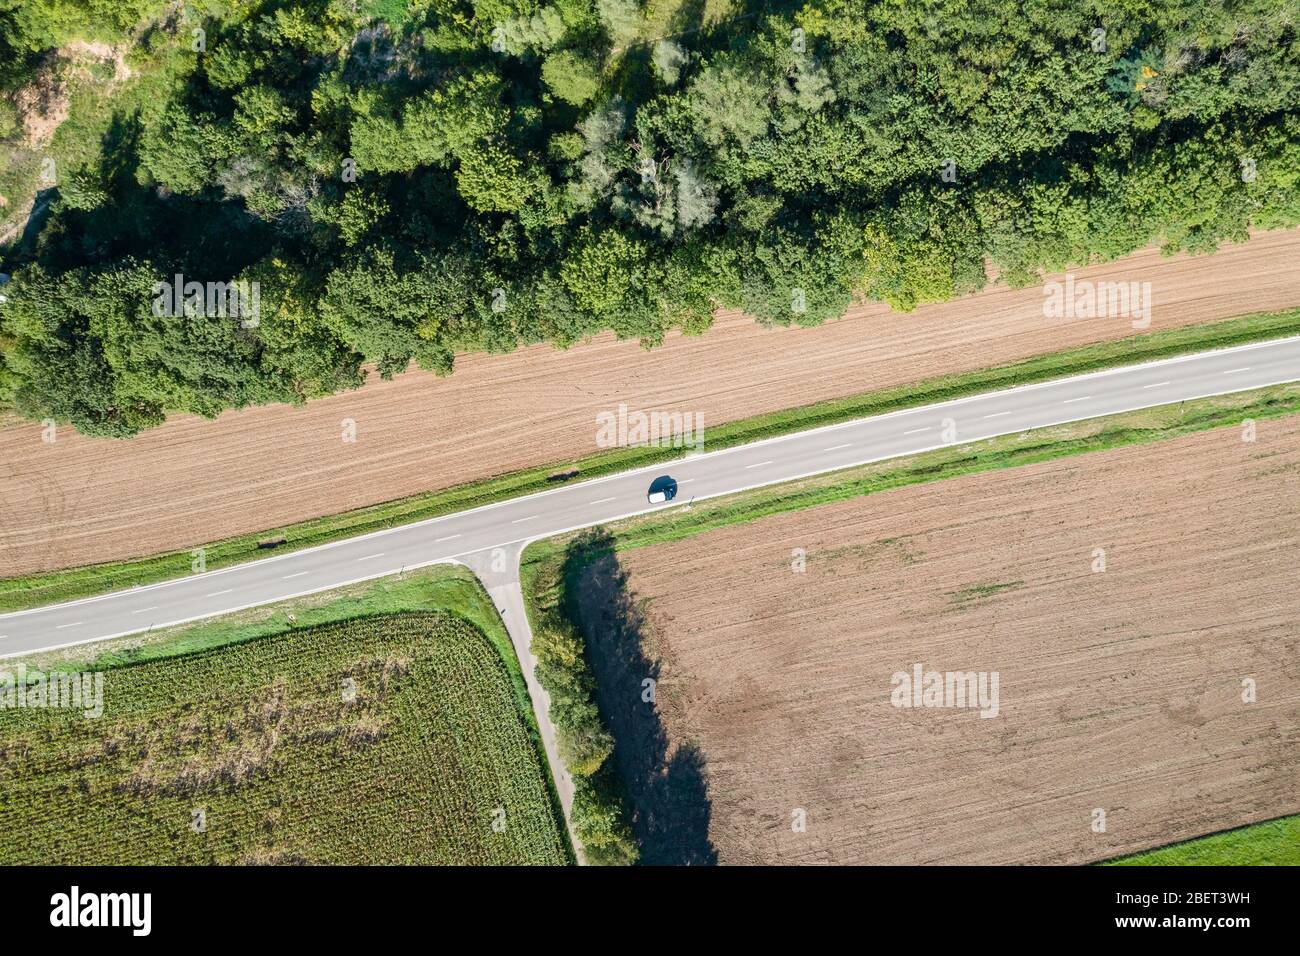 Luftaufnahme einer Landstraße mit Abzweigung und Fahrzeug Stock Photo